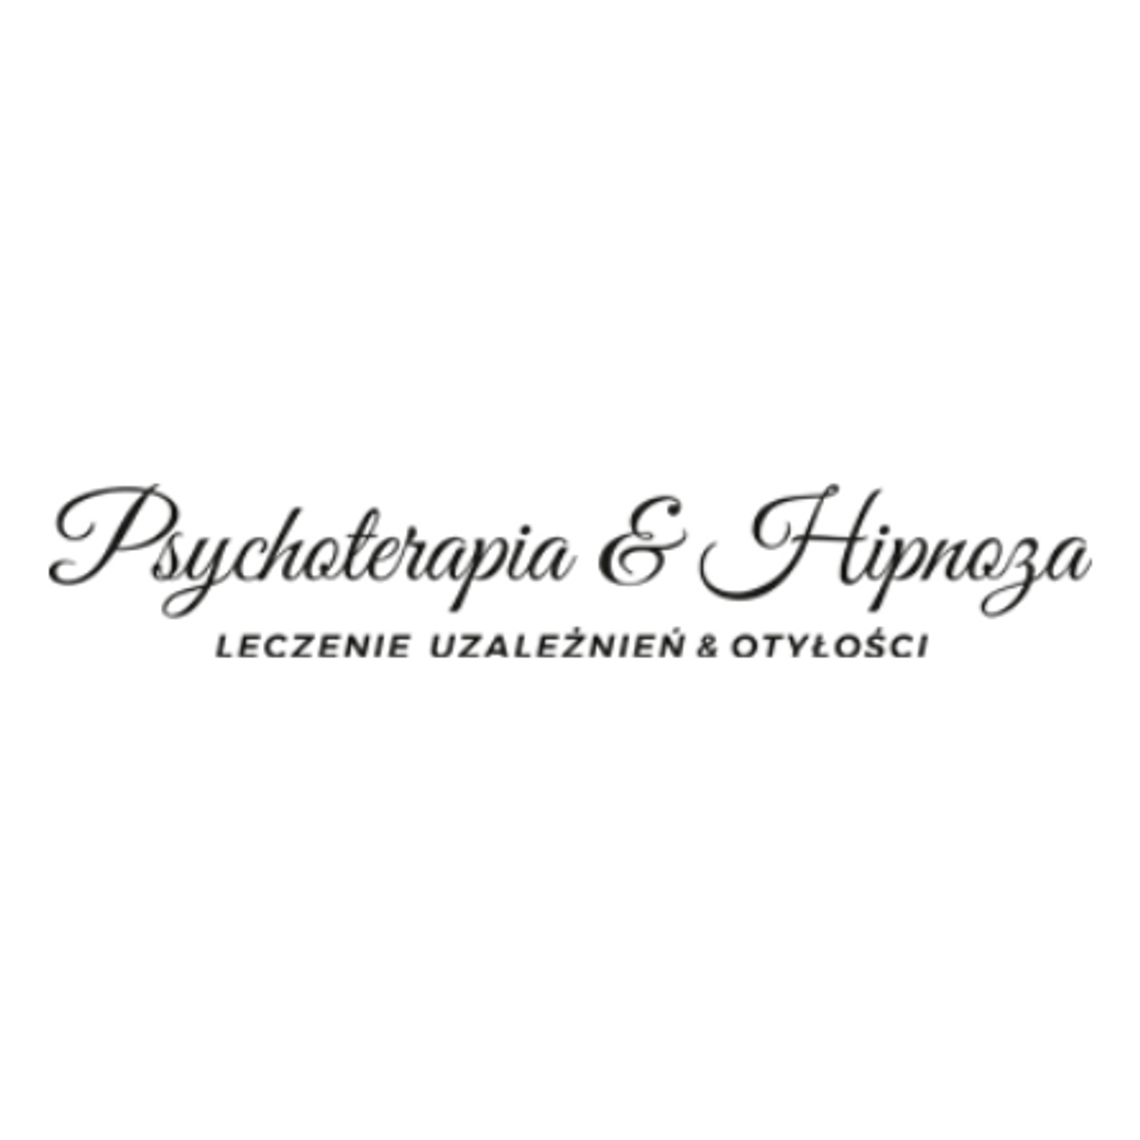 Psychoterapia & Hipnoza Ośrodek Leczenia Uzależnień i Otyłości.